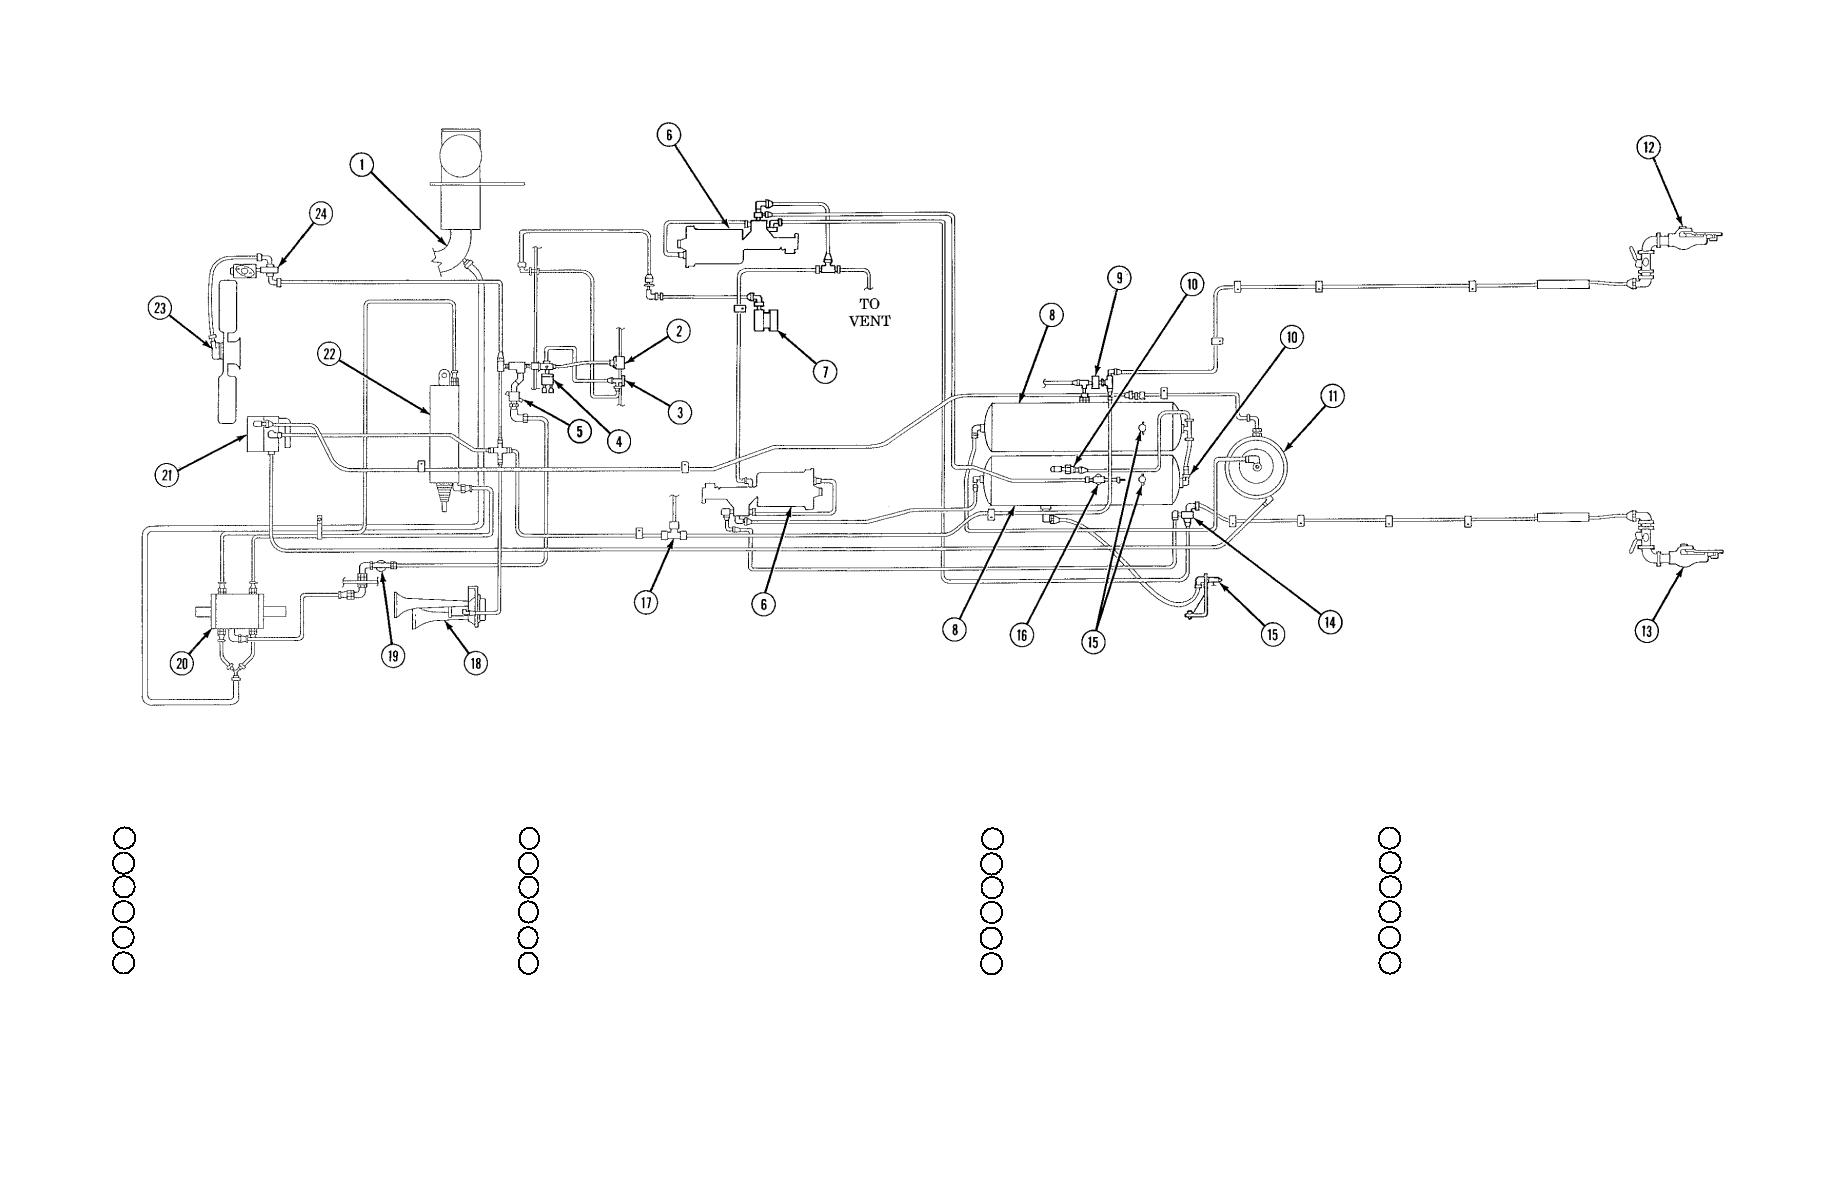 badland 2500 winch wireless remote wiring diagram